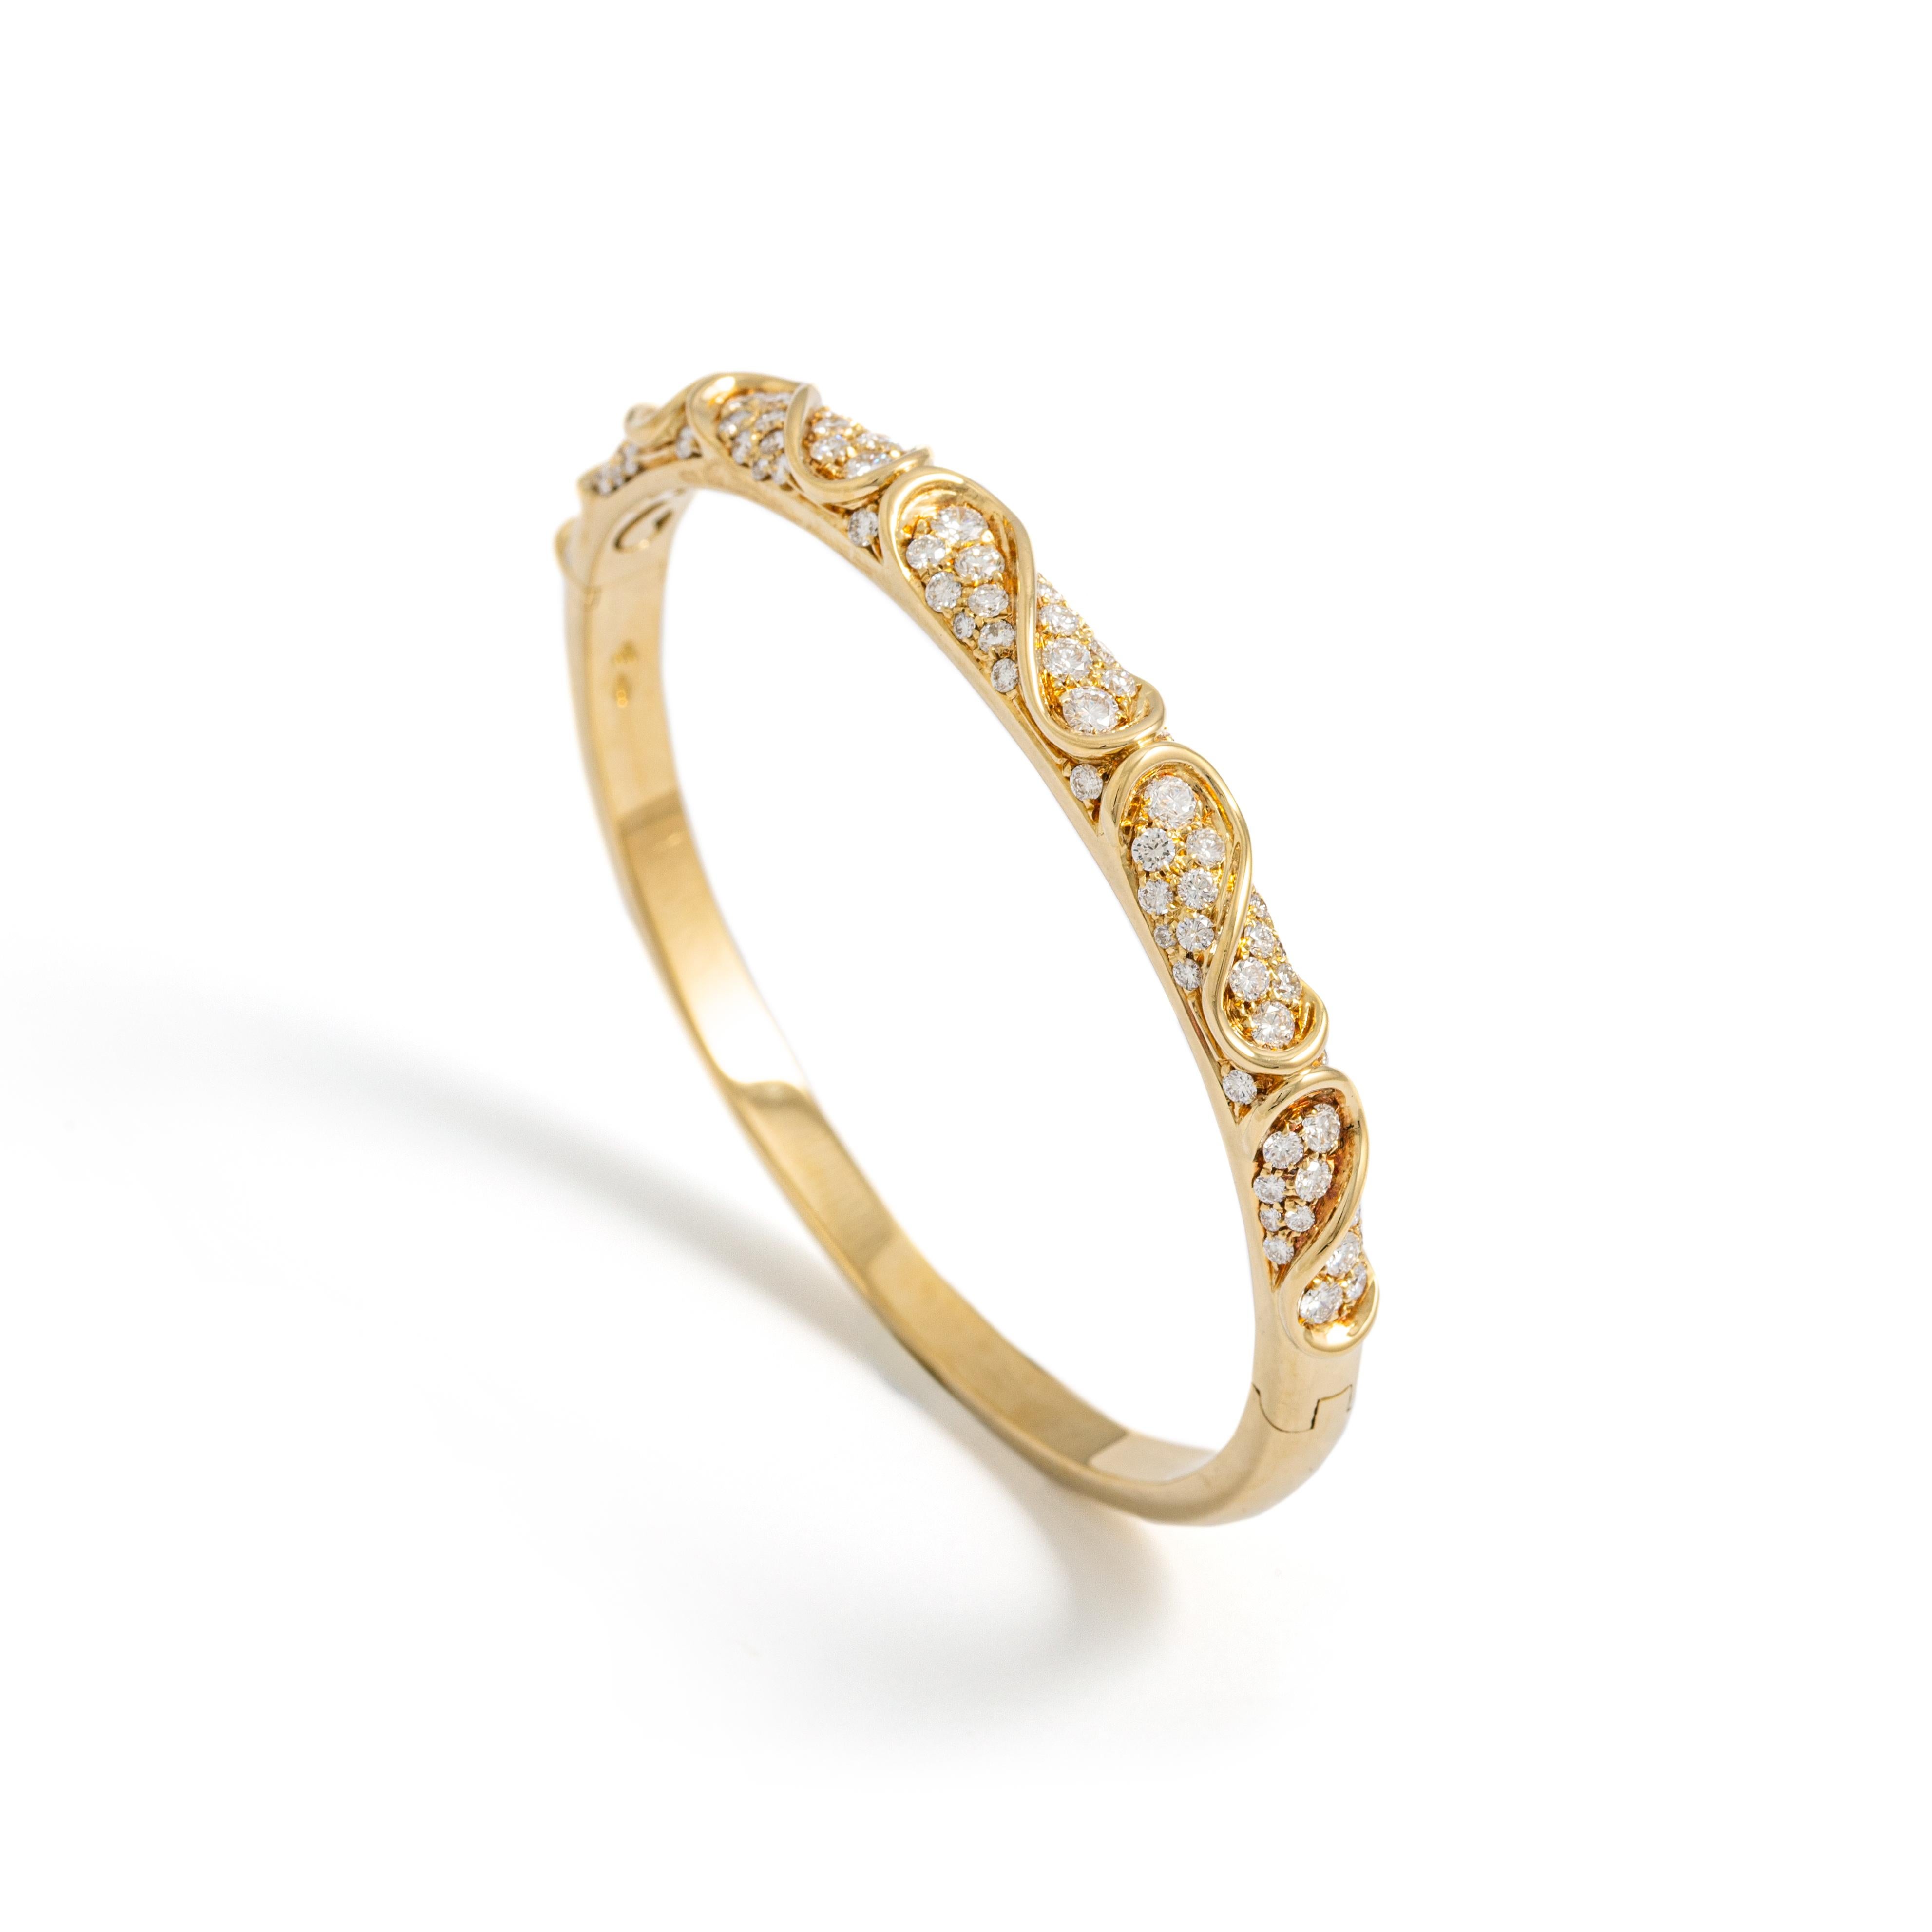 Bracelet en or jaune serti de diamants 2.19cts.
Circonférence intérieure : Environ 16,33 centimètres (6,43 pouces)

Poids total : 25,48 grammes.
Largeur sur le dessus : 0,6 centimètres ( 0,24 pouces).

